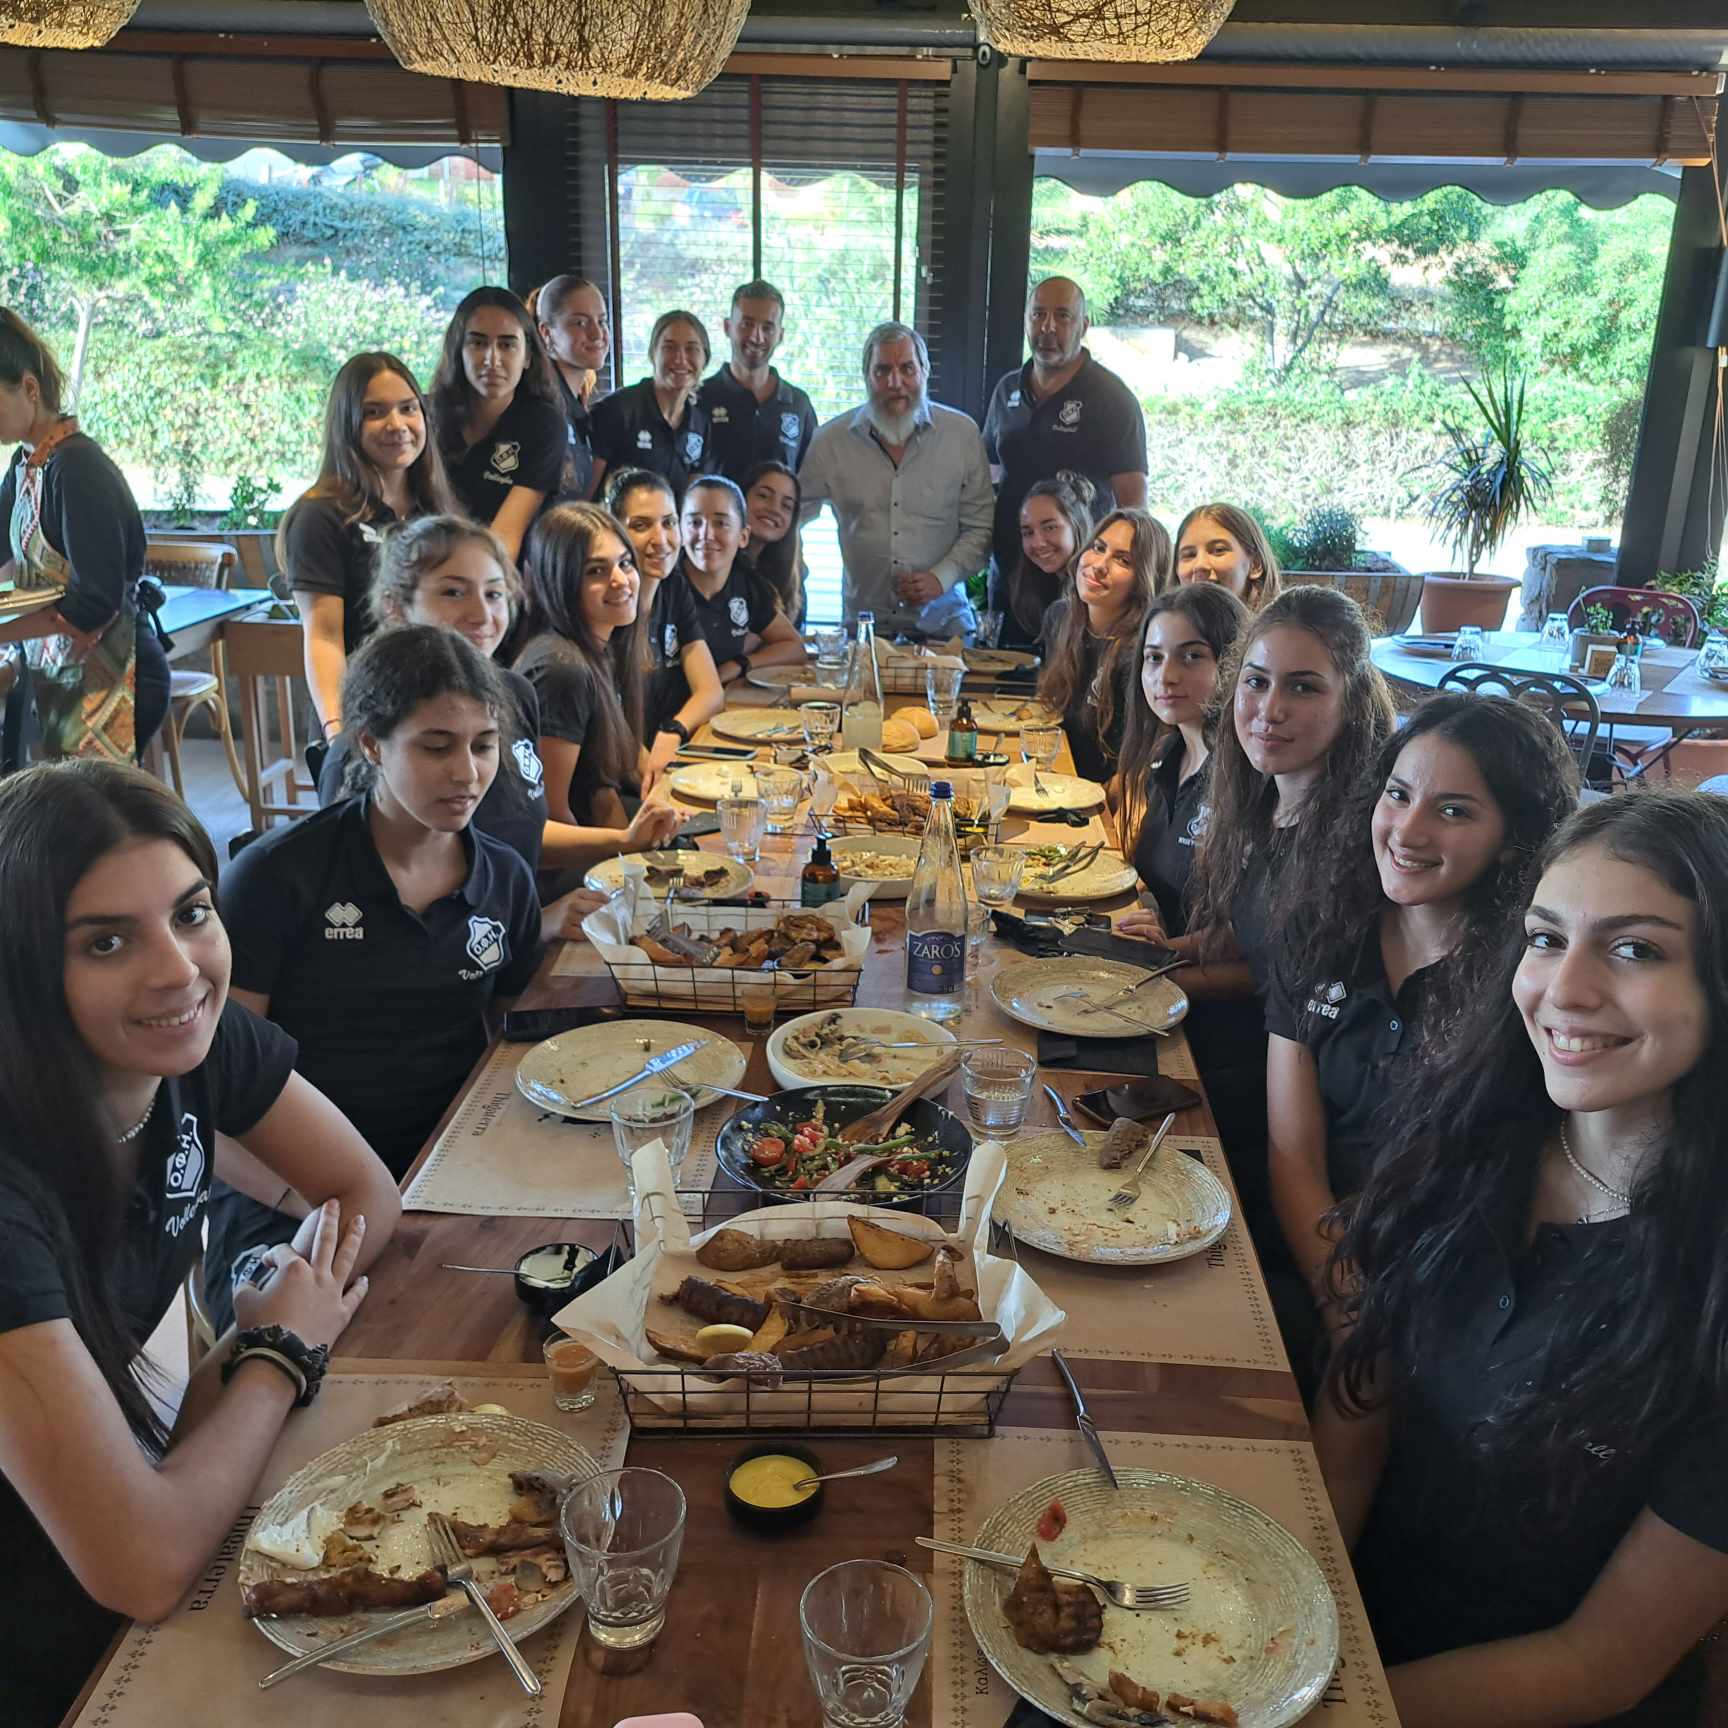 Προεδρικό τραπέζι απο τον Γιάννη Δανδάλη στα κορίτσια  της ομάδας βόλεϊ του ΟΦΗ (ΦΩΤΟΓΡΑΦΙΕΣ)